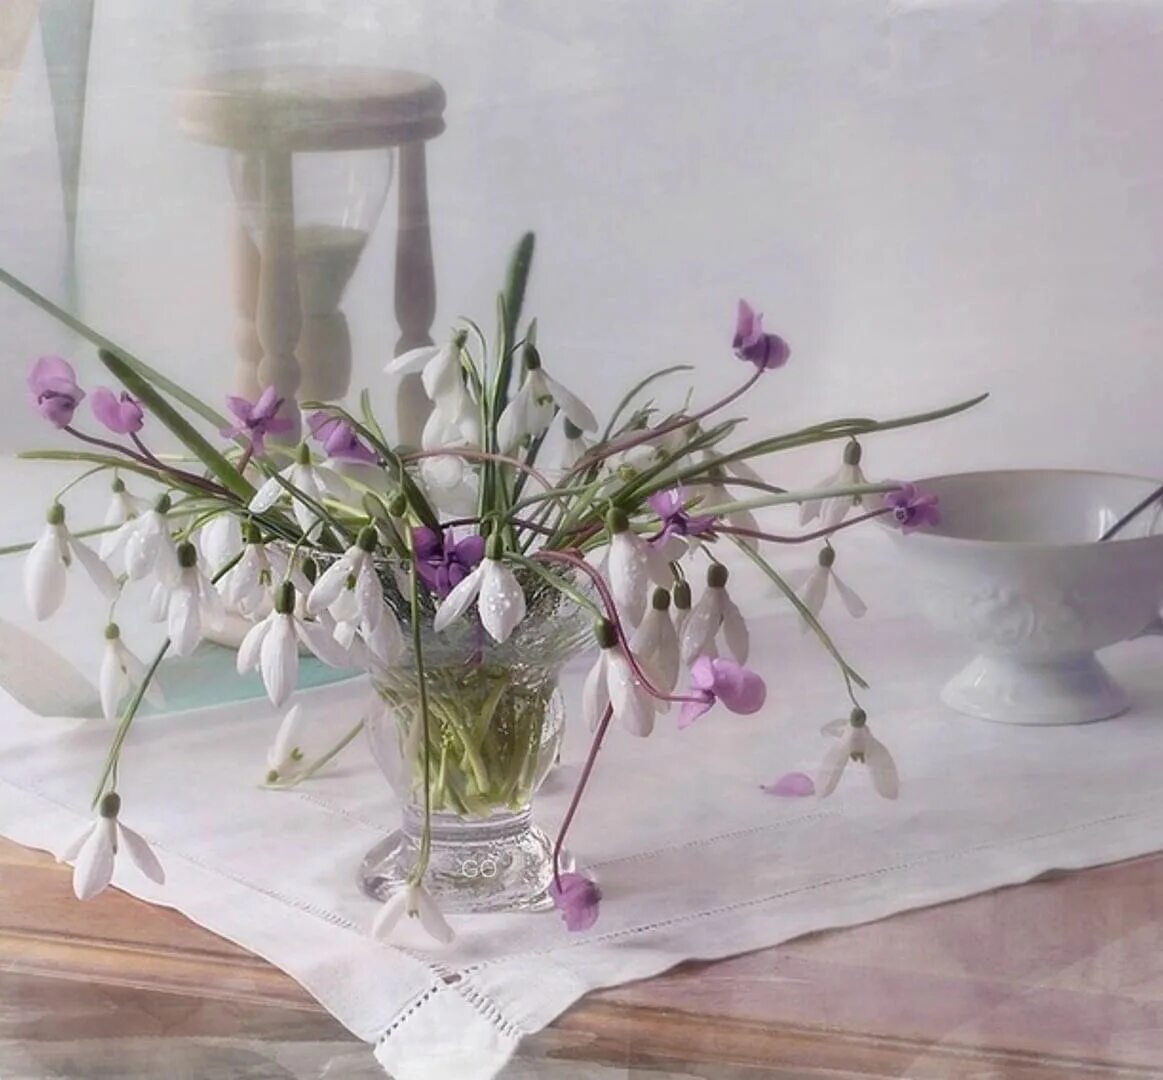 Джим Фаррант натюрморт. Джим Фаррант художник. Натюрморт с весенними цветами. Весенние цветы в вазе.